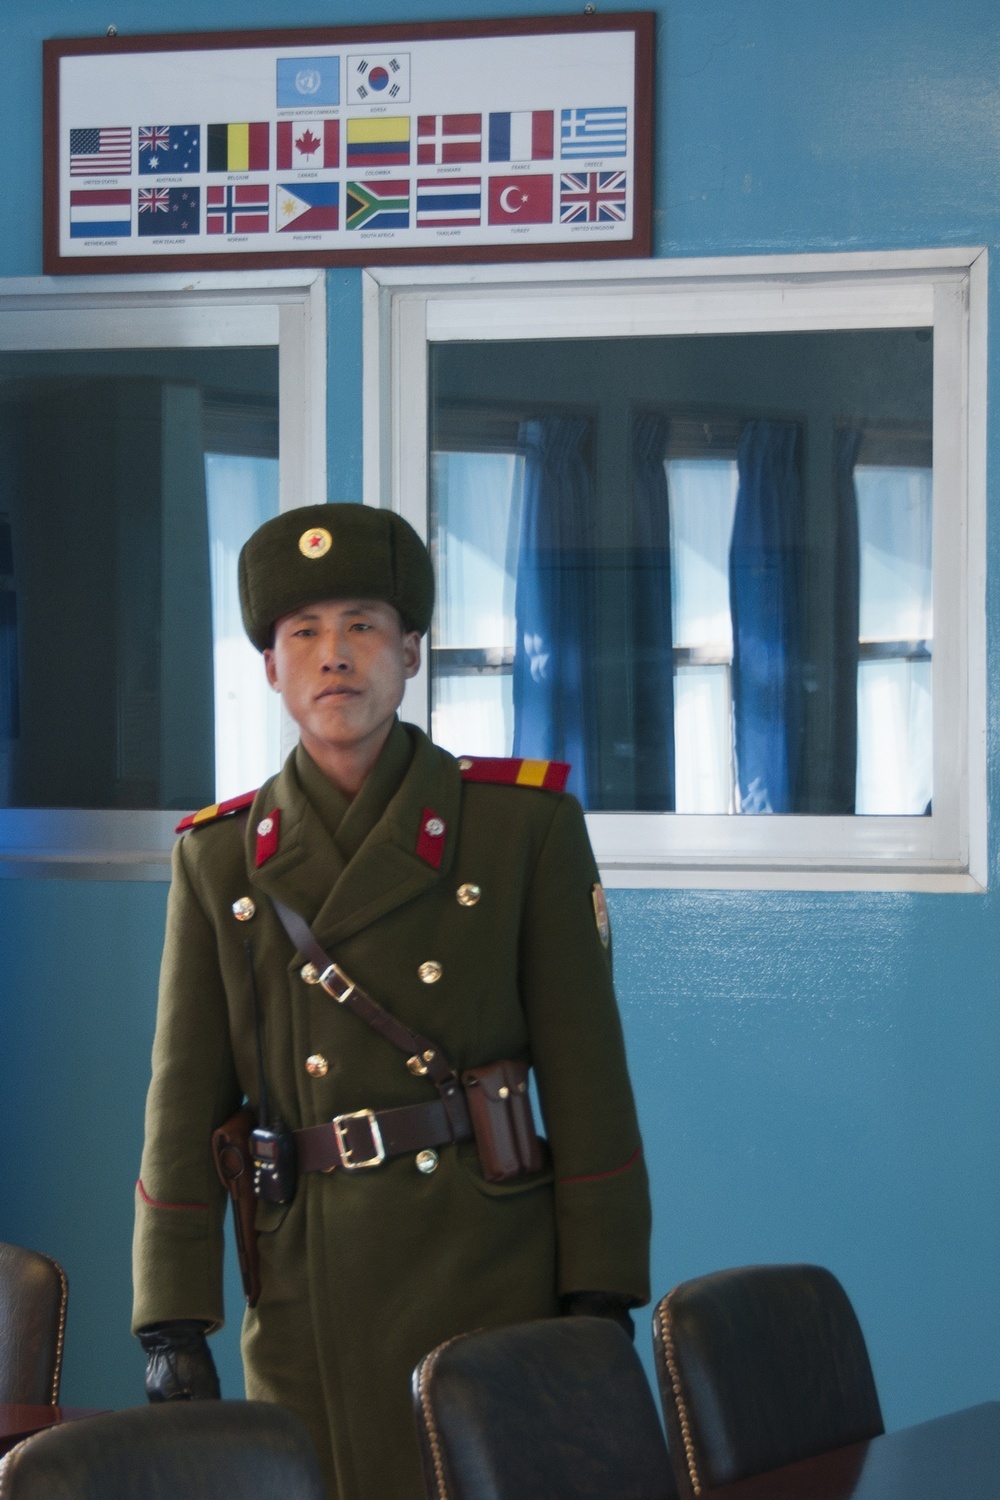 Редкие кадры из Северной Кореи